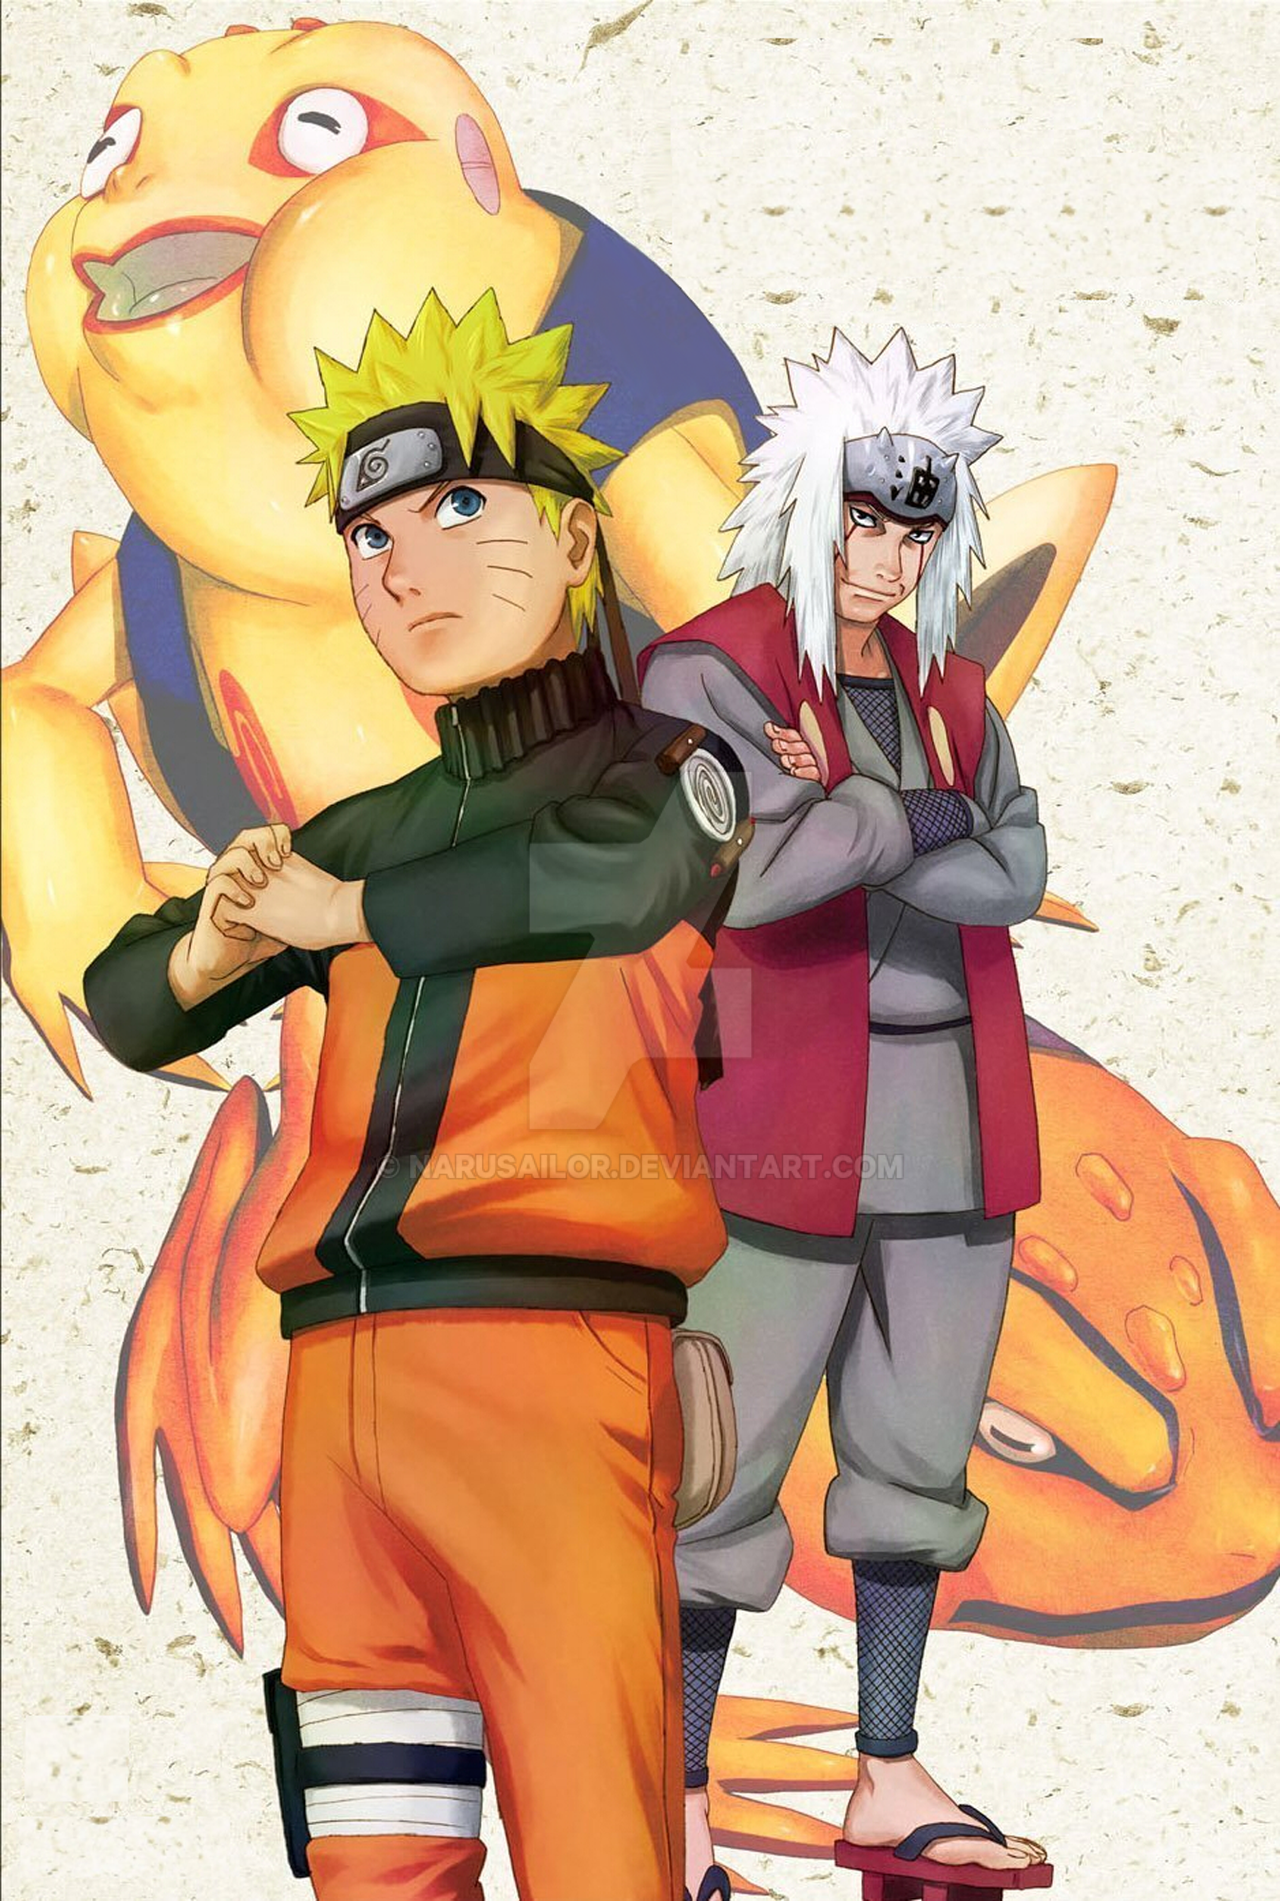 Naruto and Jiraiya by Narusailor on DeviantArt